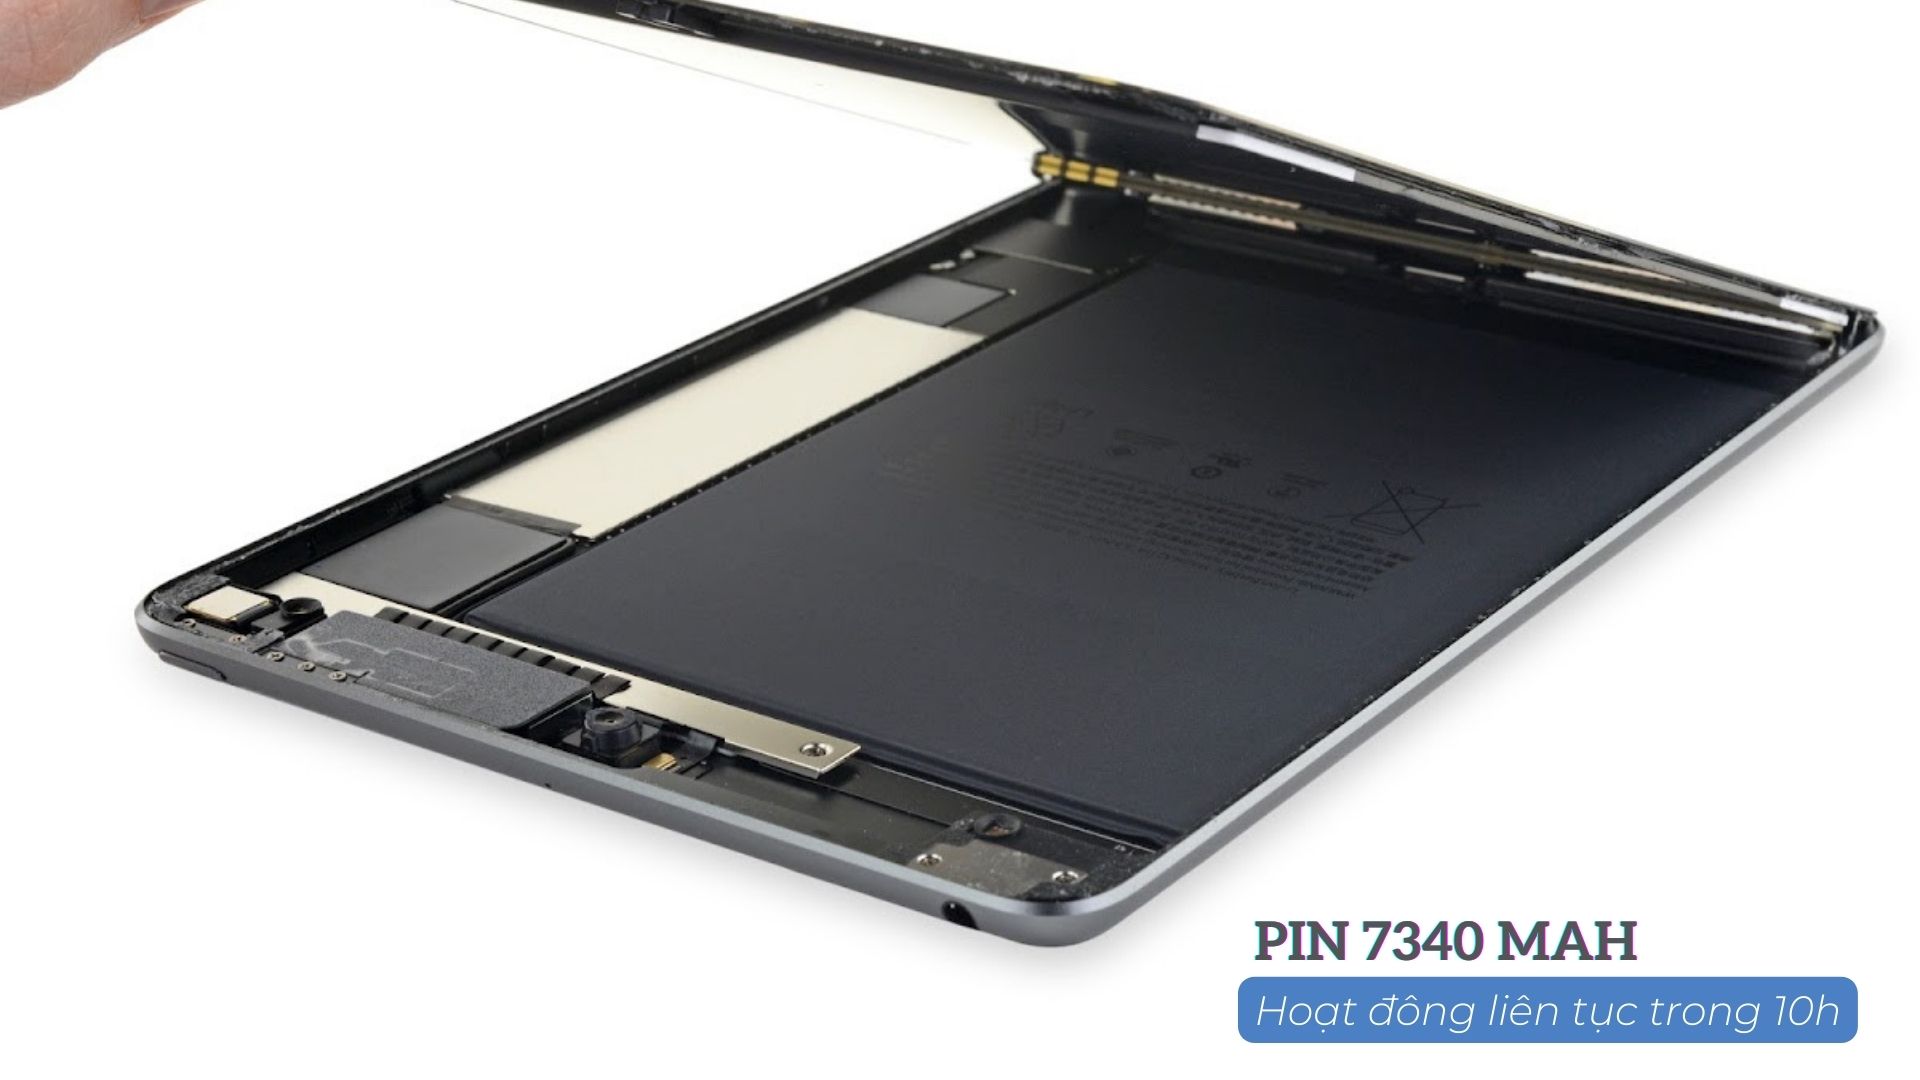 pin của iPad air 2 có dung lương 7340mah